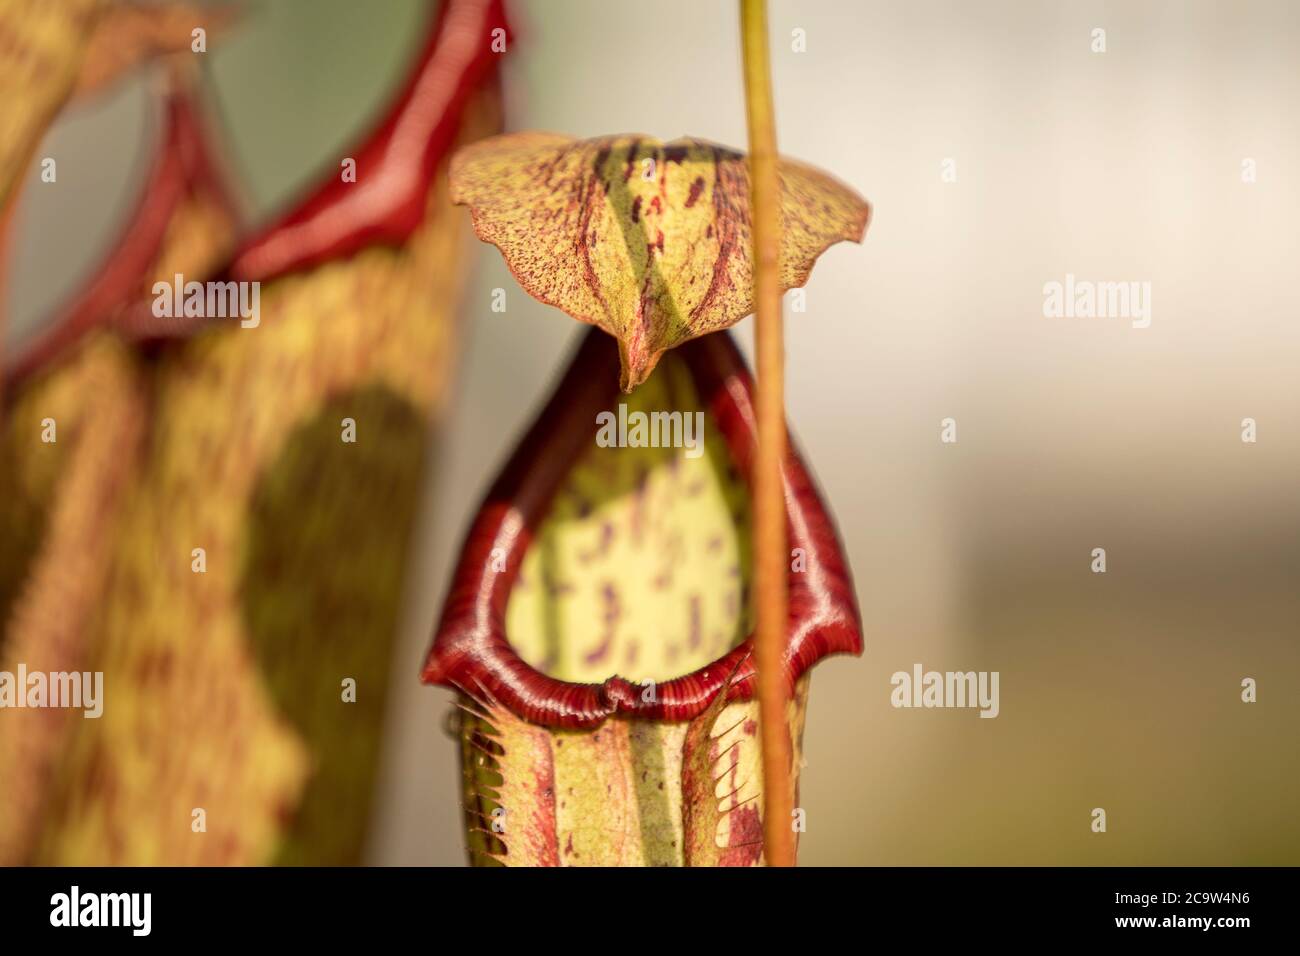 Fleischfressende Pflanze mit Kelch für Fliegen Stockfotografie - Alamy